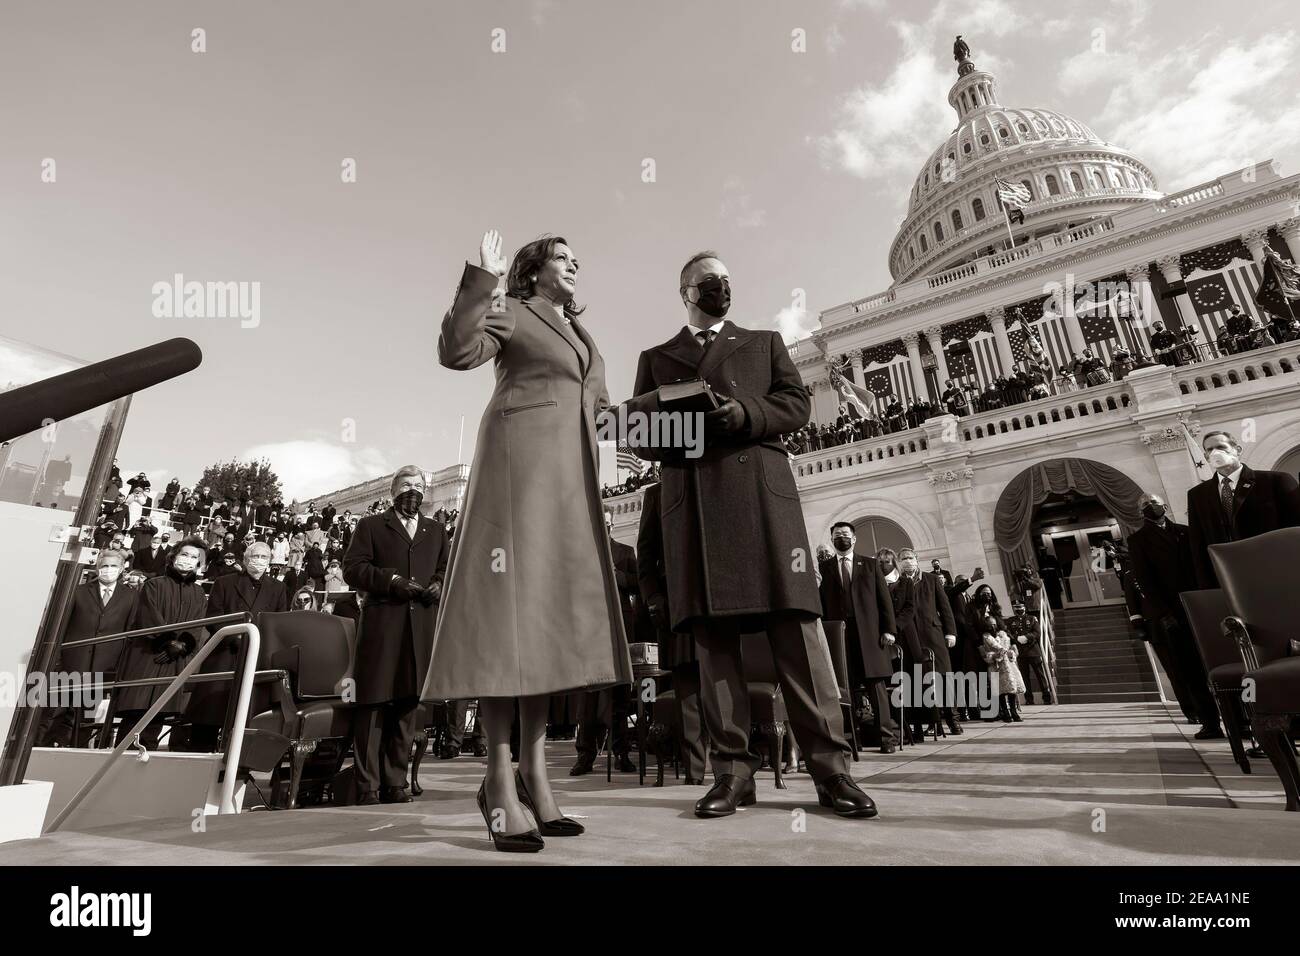 Le vice-président Kamala Harris, accompagné de son mari, M. Doug Emhoff, prend le serment d'office de vice-président des États-Unis mercredi 20 janvier 2021, lors de la 59ème inauguration présidentielle au Capitole des États-Unis à Washington (D.C.) (photo officielle de la Maison Blanche par Chuck Kennedy) Banque D'Images